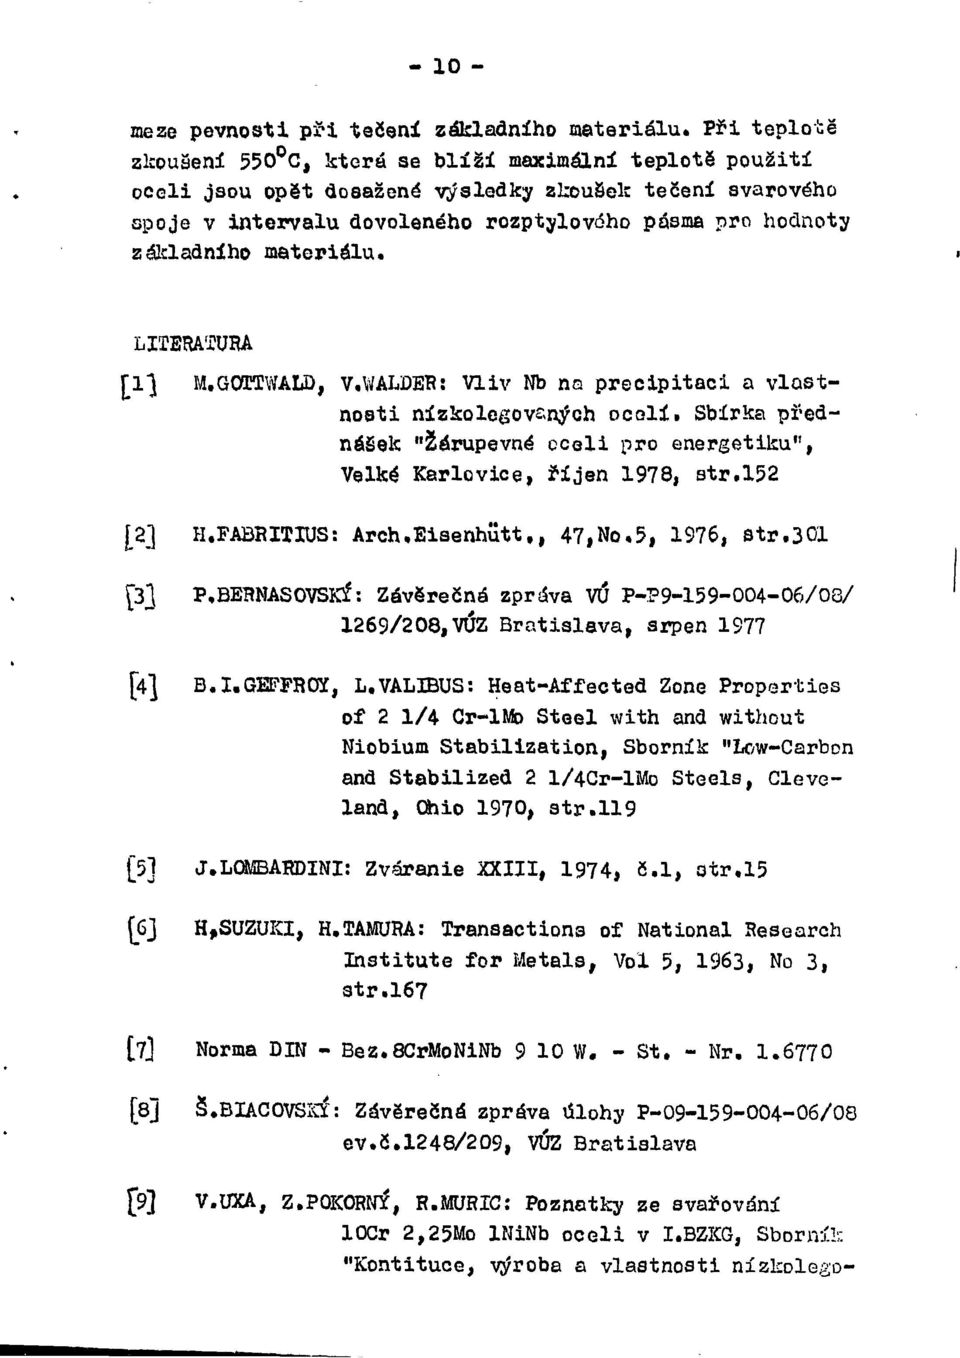 Sbírka přednásek "Žárupevné oceli pro energetiku", Velké Karlovice, říjen 1978, str.152 [a] H.FABRITIUS: Arch.Eisenhutt,, 47,No,5, 1976, str.301 [3] P.